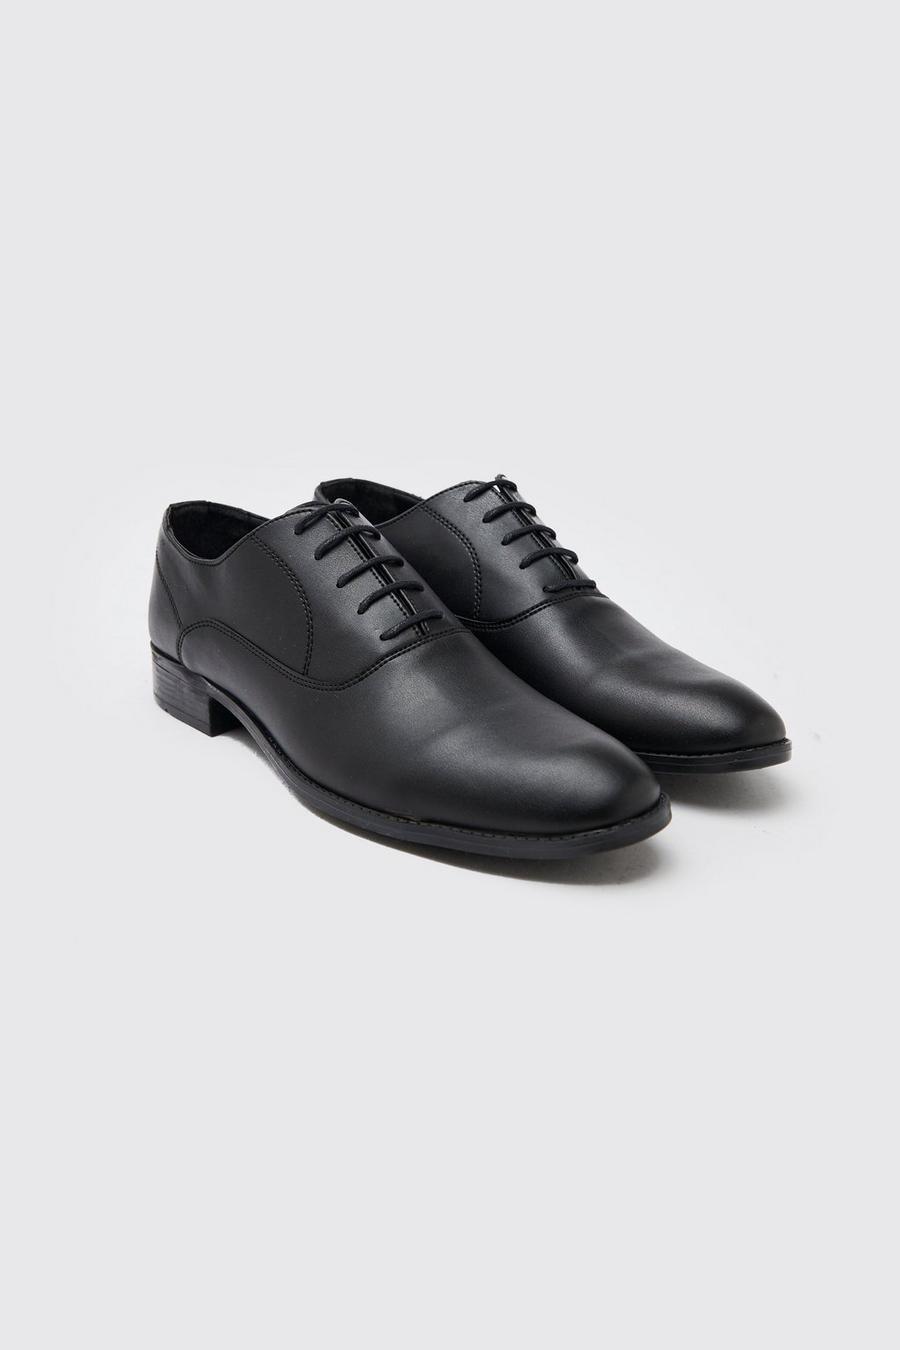 Zapatos Oxford de cuero sintético, Black nero